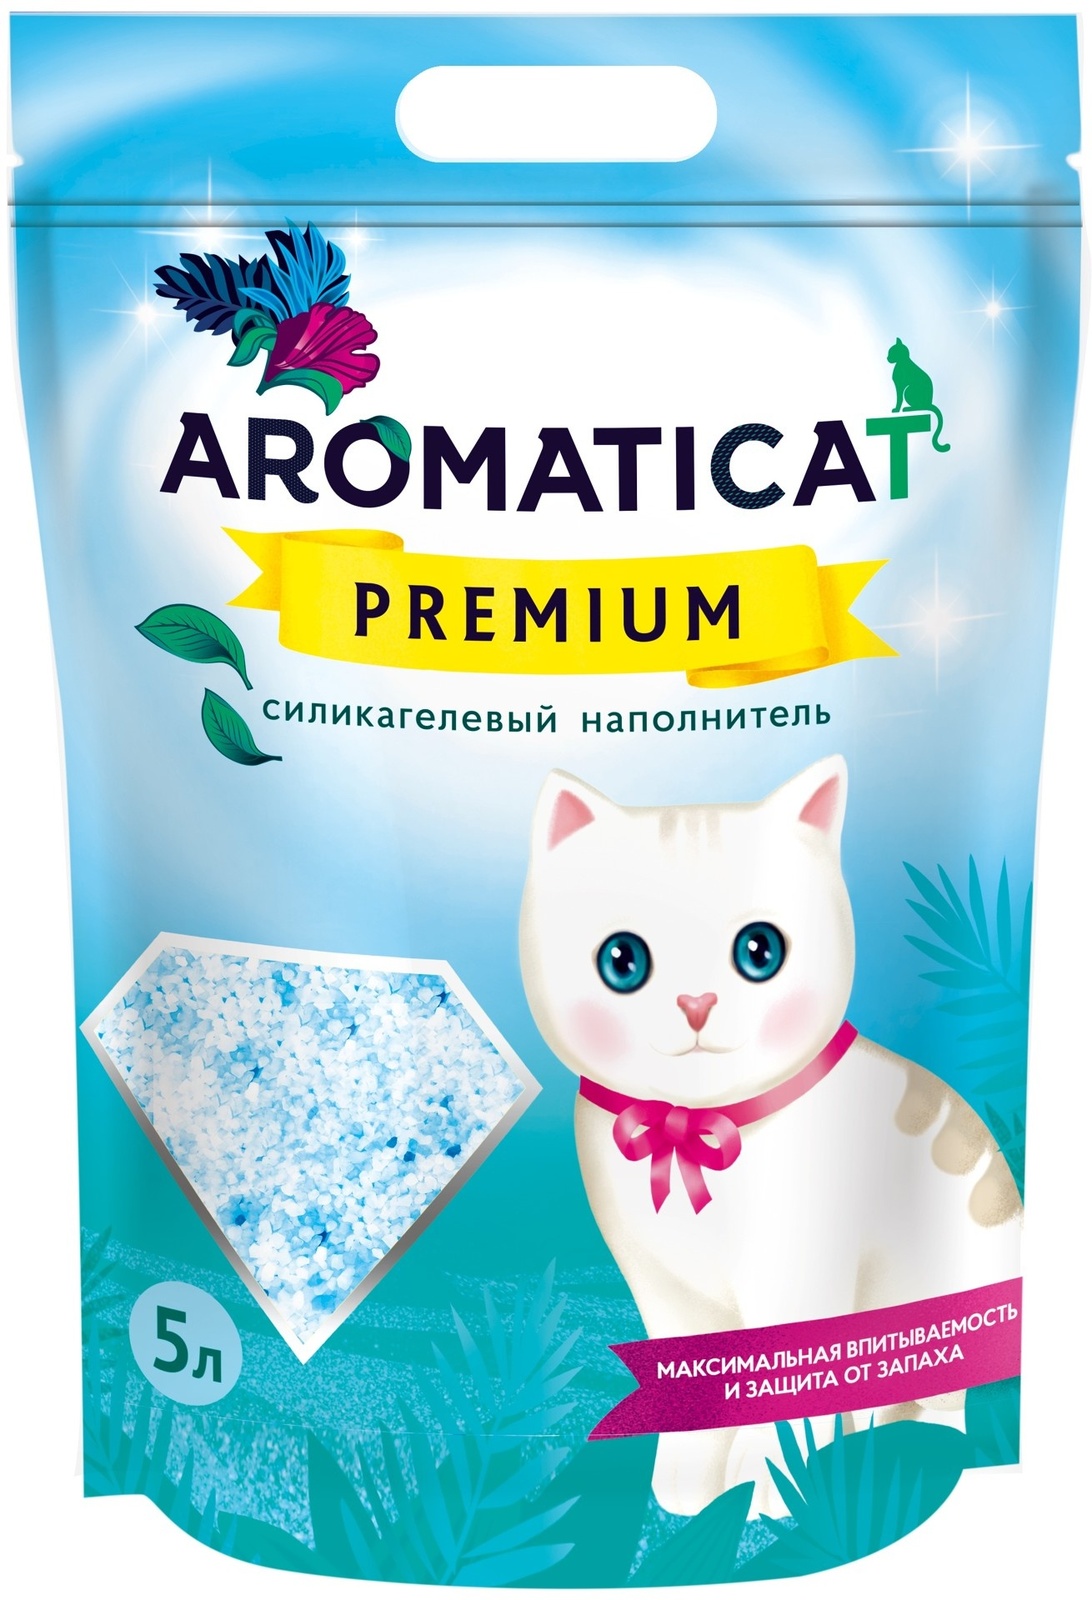 AromatiCat силикагелевый наполнитель Premium (2 кг)